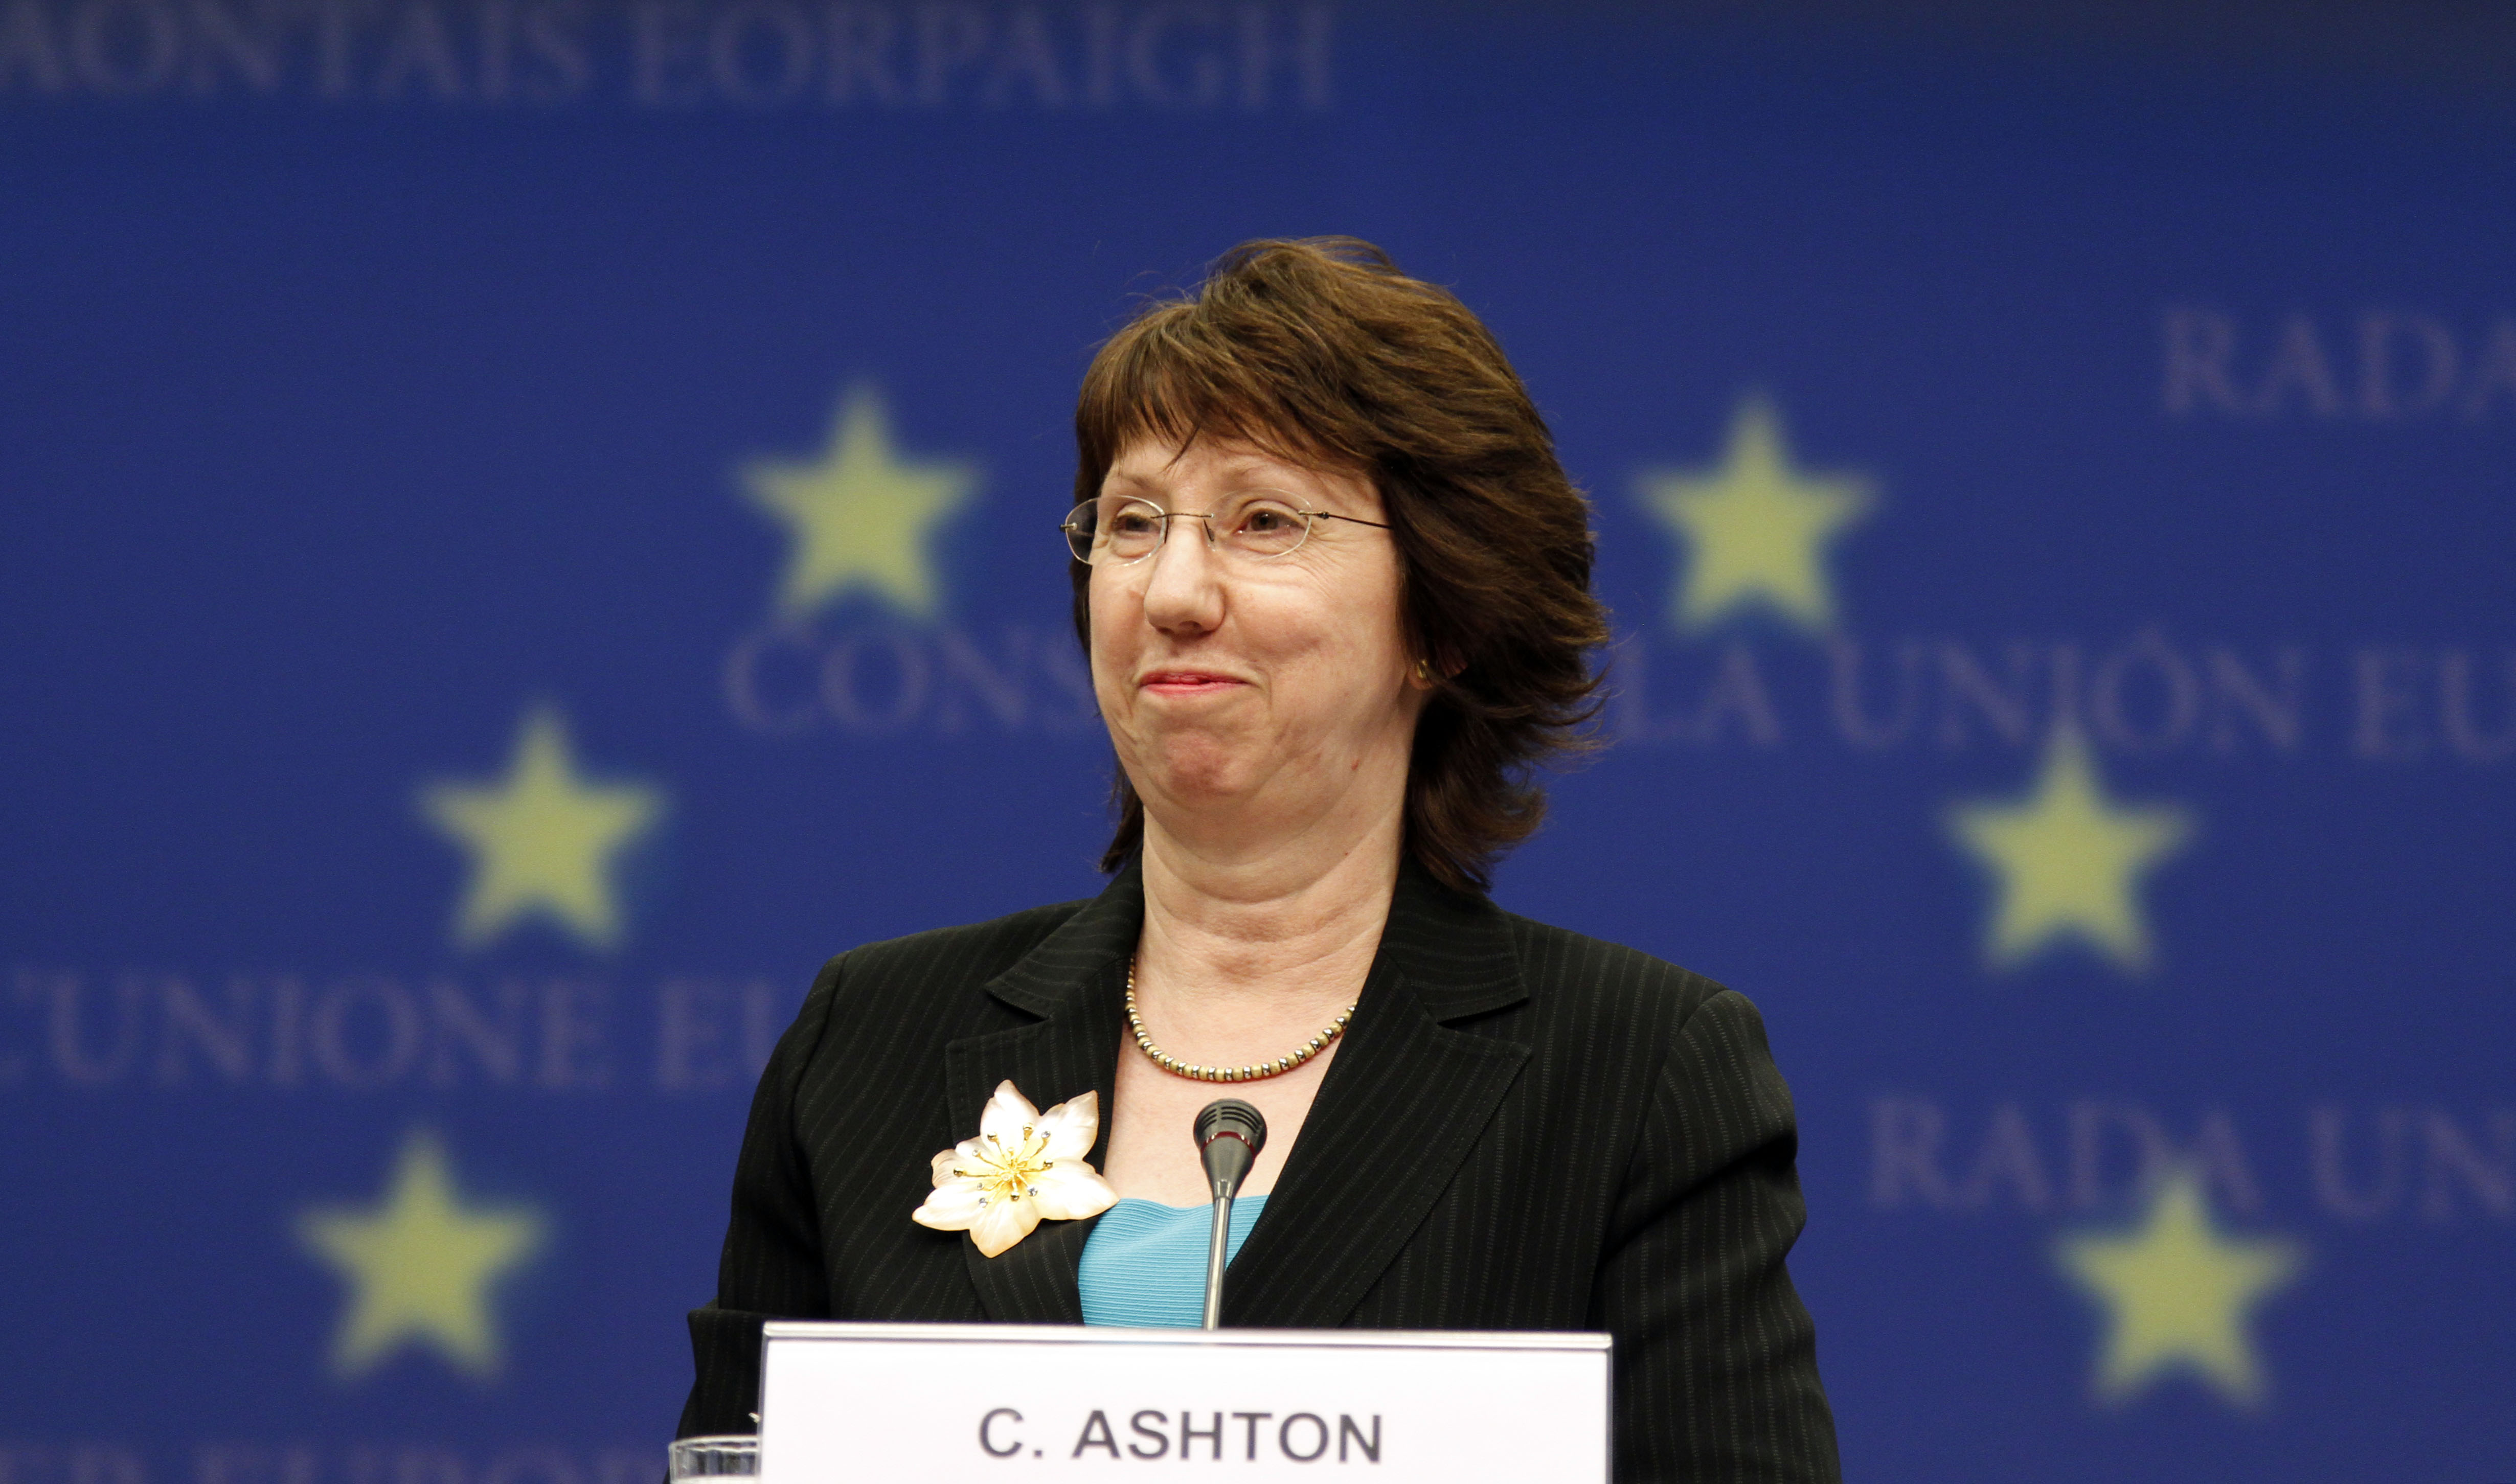 EU:s utrikesminister, Catherine Ashton, säger att Egypten måste respektera medborgarnas rätt att protestera.